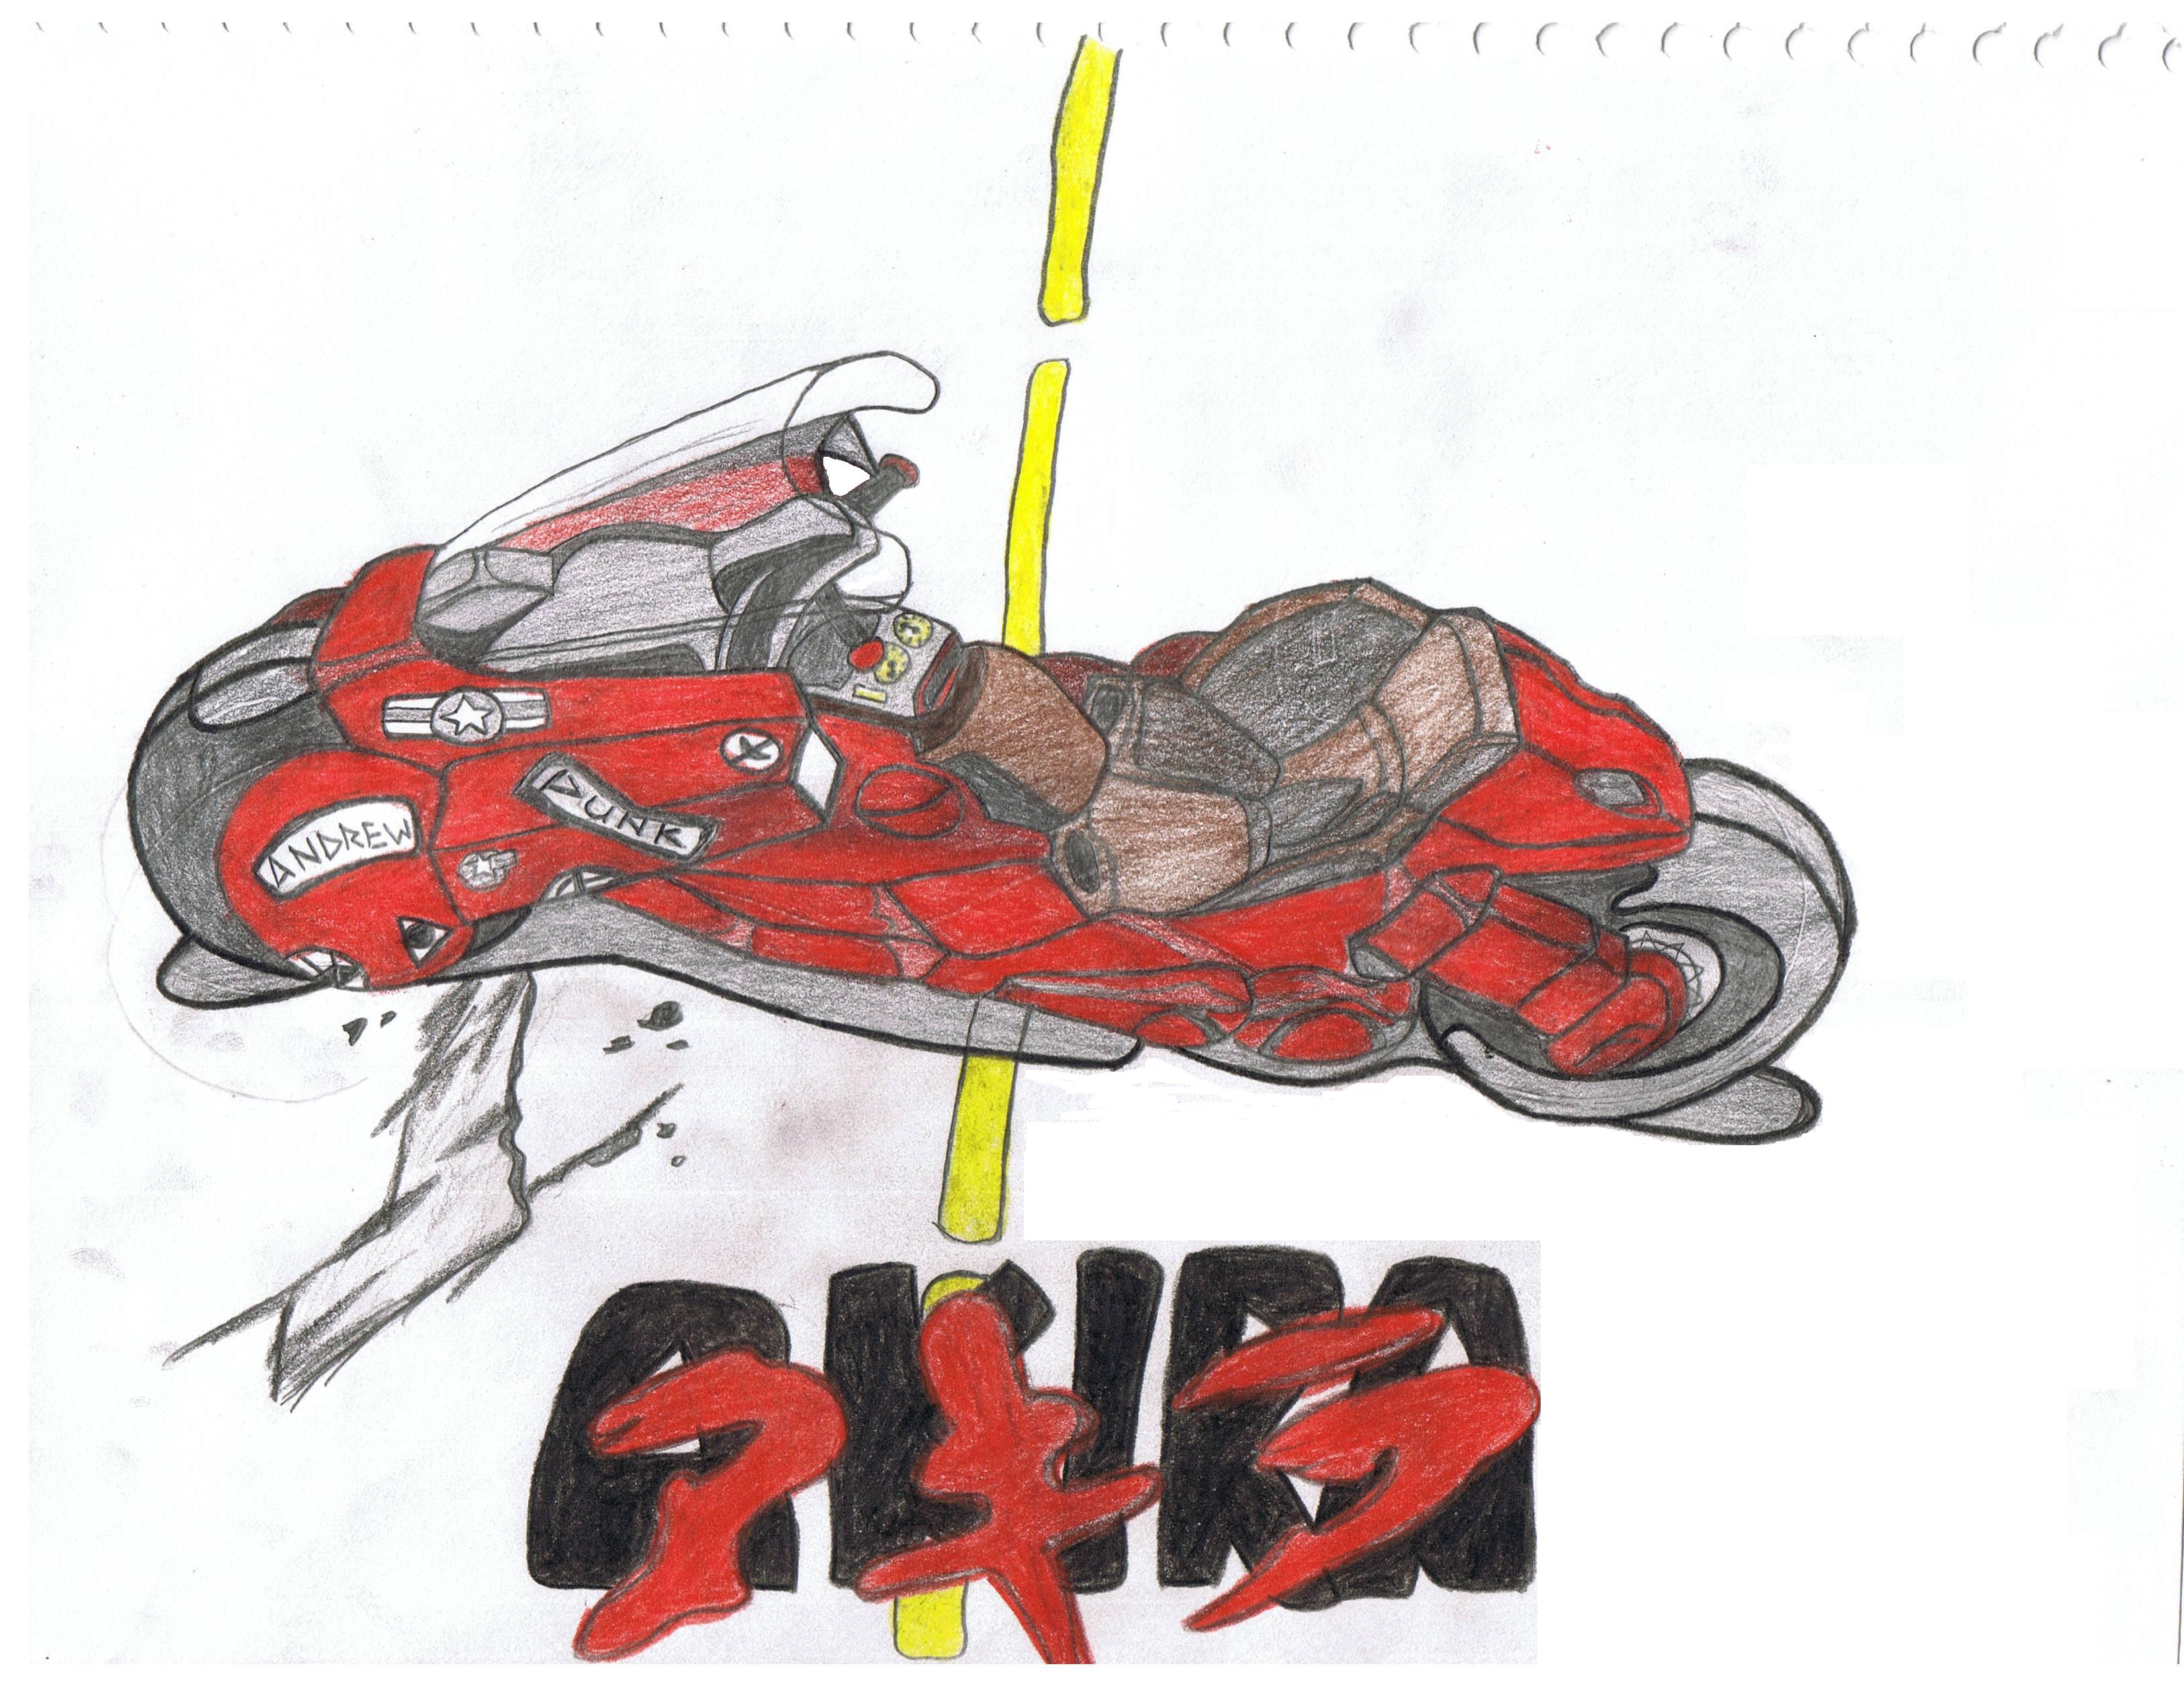 Kaneda's power bike by kh2_SORA_kidd63